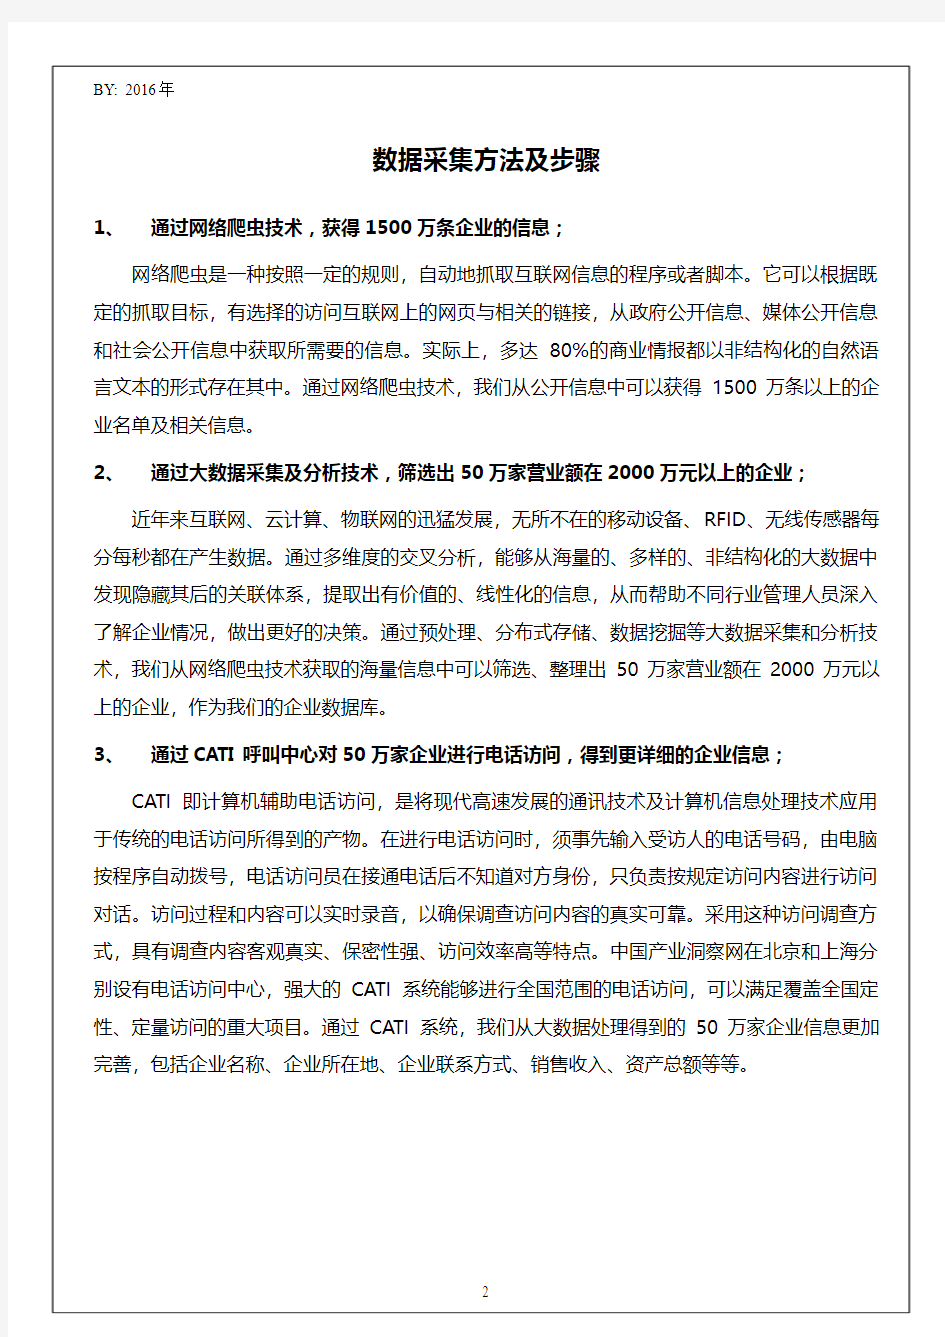 2015年度浙江超牛橡胶制品有限公司销售收入与资产数据报告